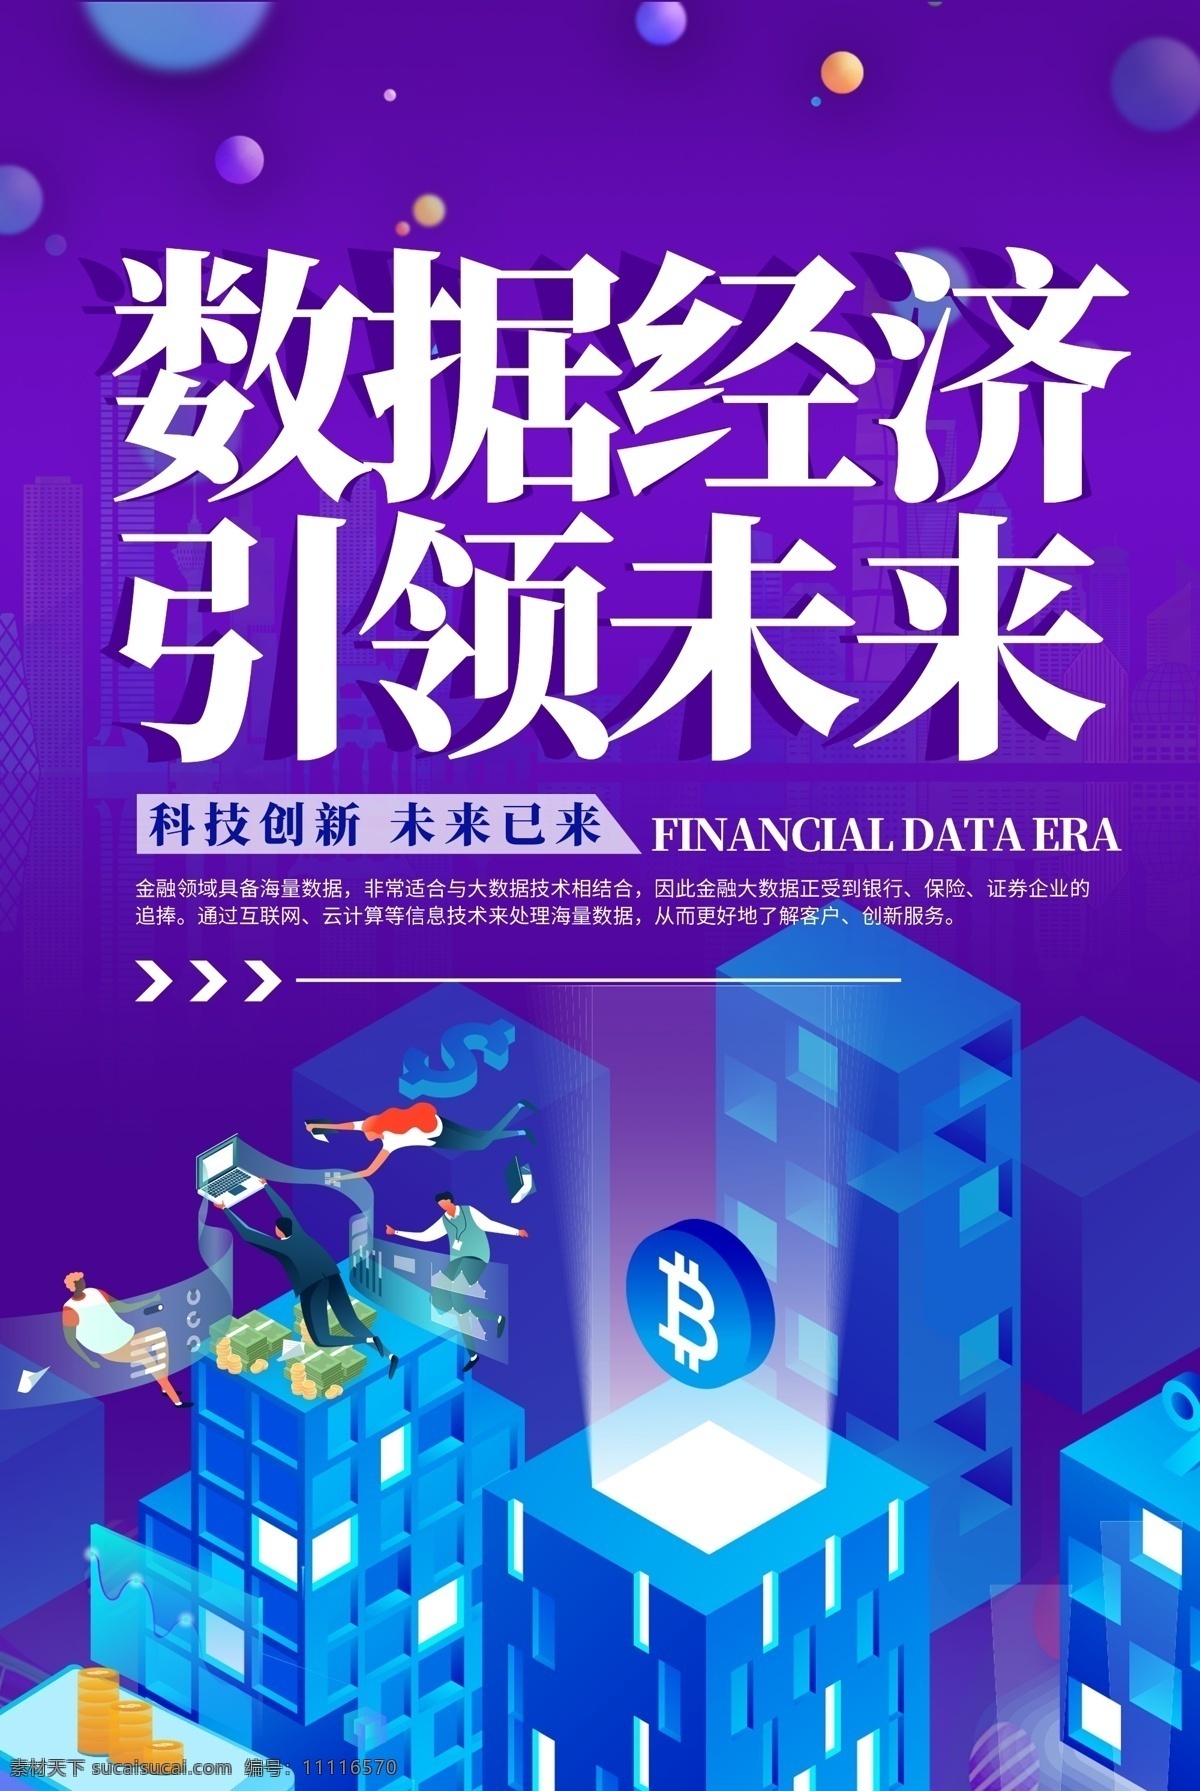 数据经济 大数据 智慧城市 科技背景 互联网背景 中国经济区 大数据可视化 数据展示